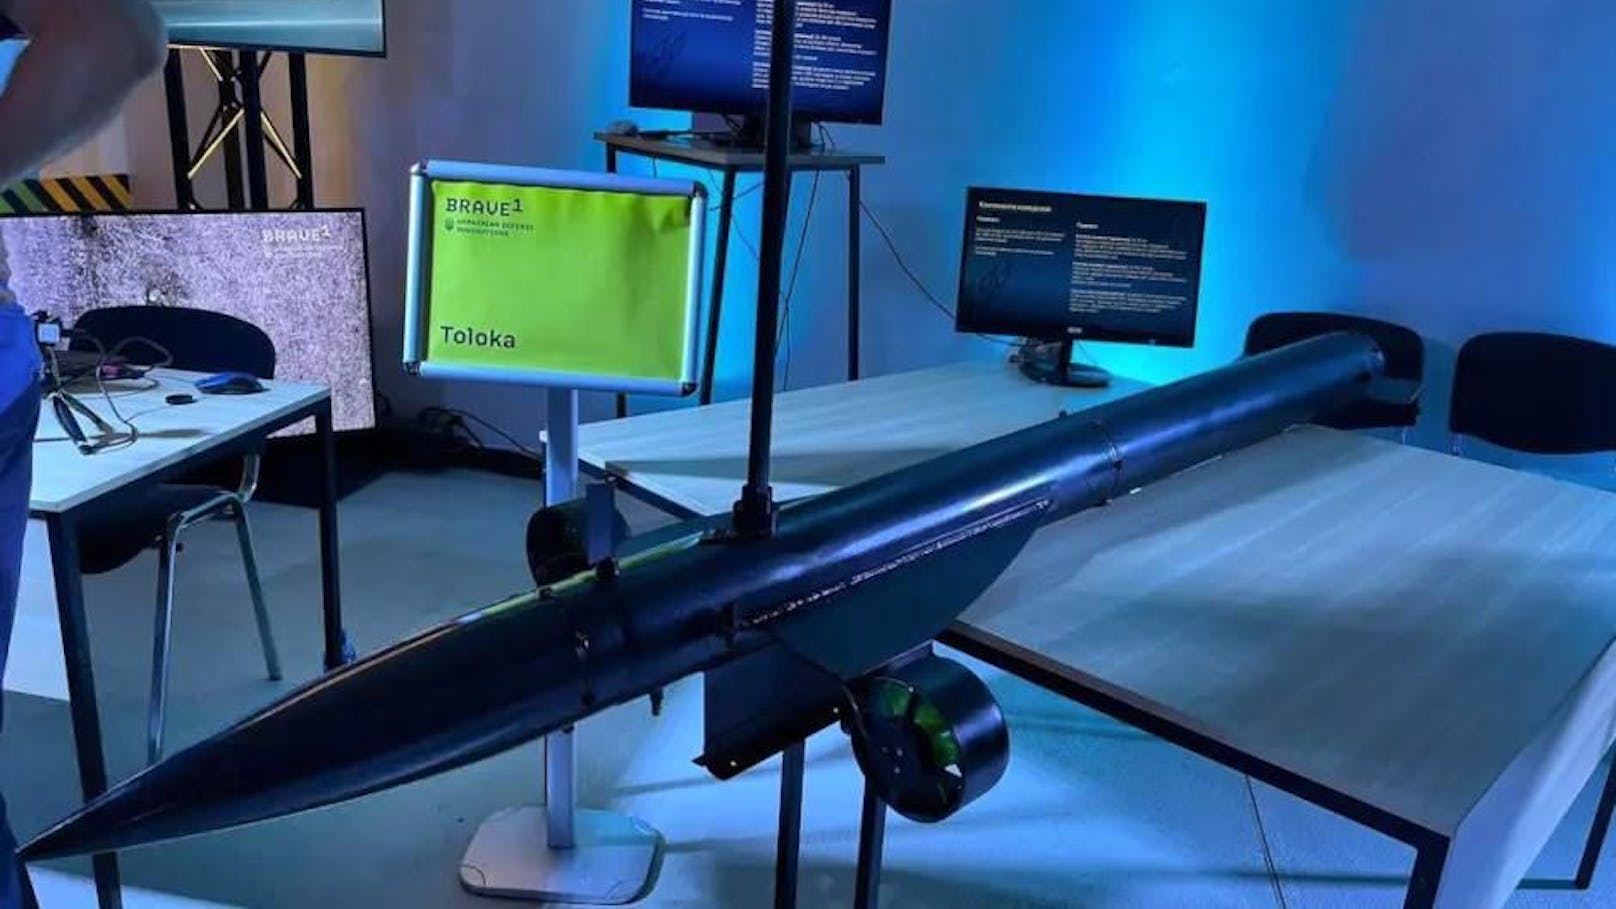 Einer der Stars der Veranstaltung: die Toloka-Unterwasser-Torpedo-Drohne, ein unbemanntes Unterwasserfahrzeug (UUV), mit…